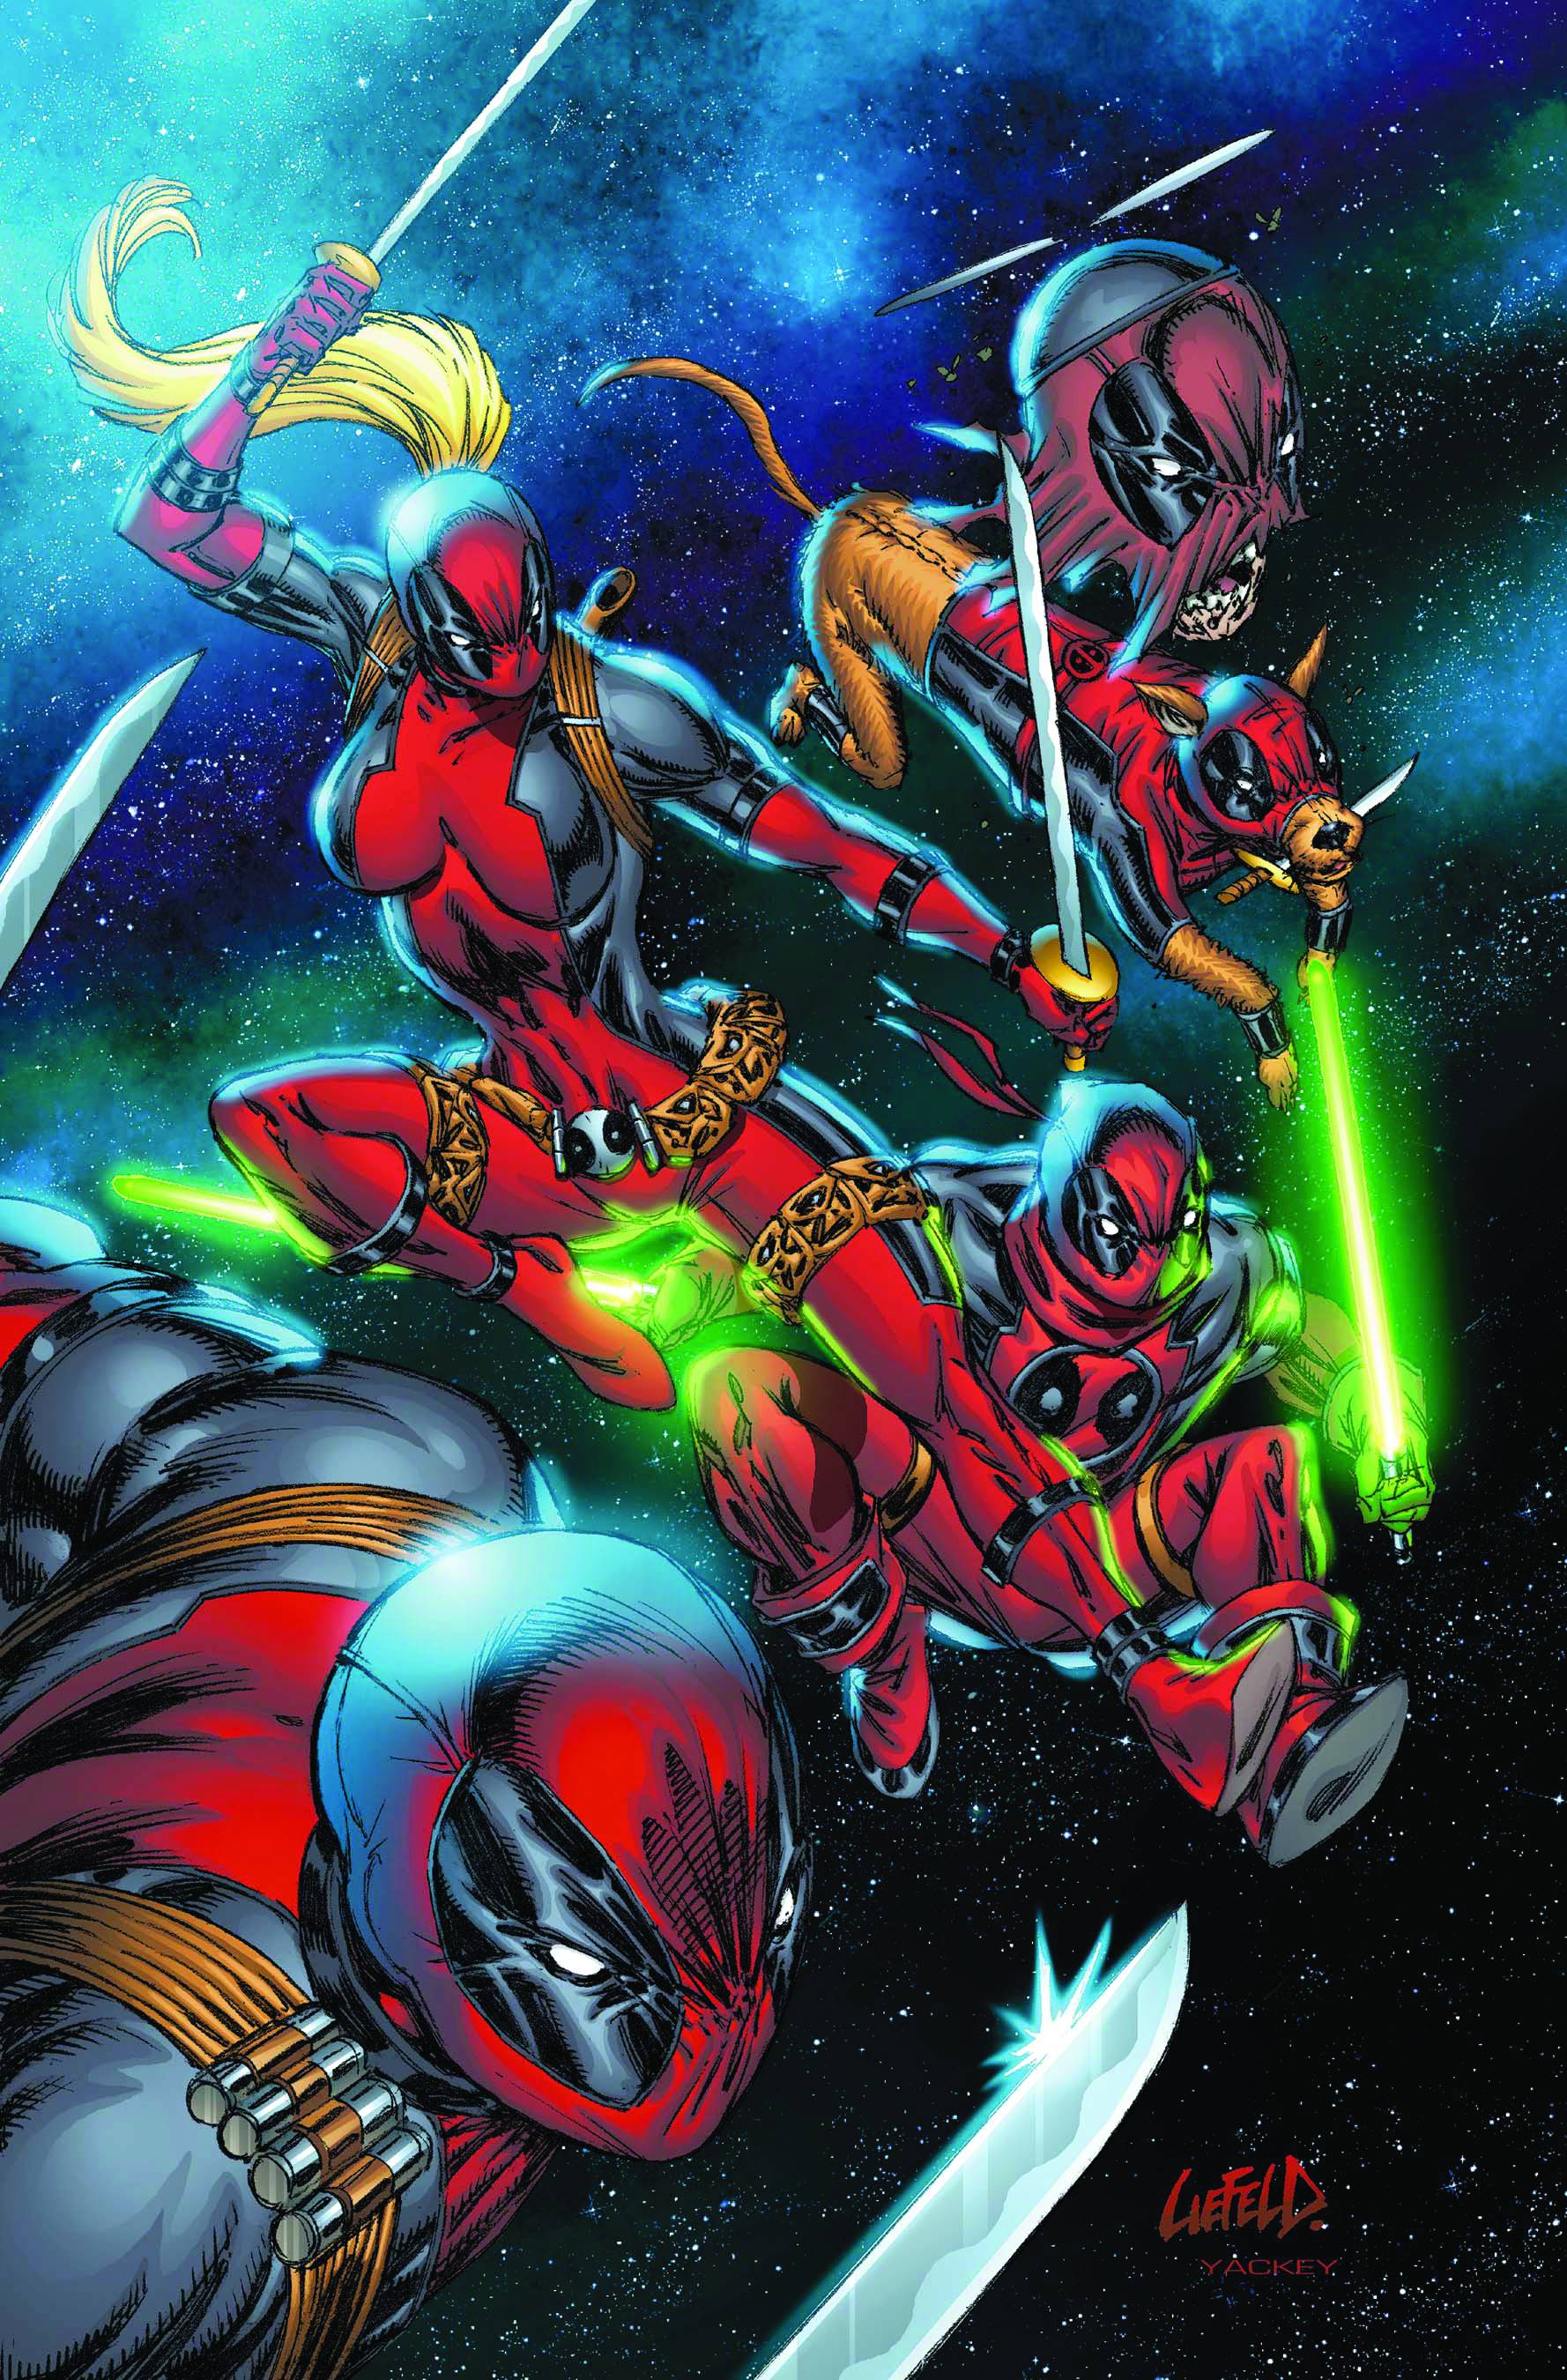 Deadpool Corps #1 (2010)